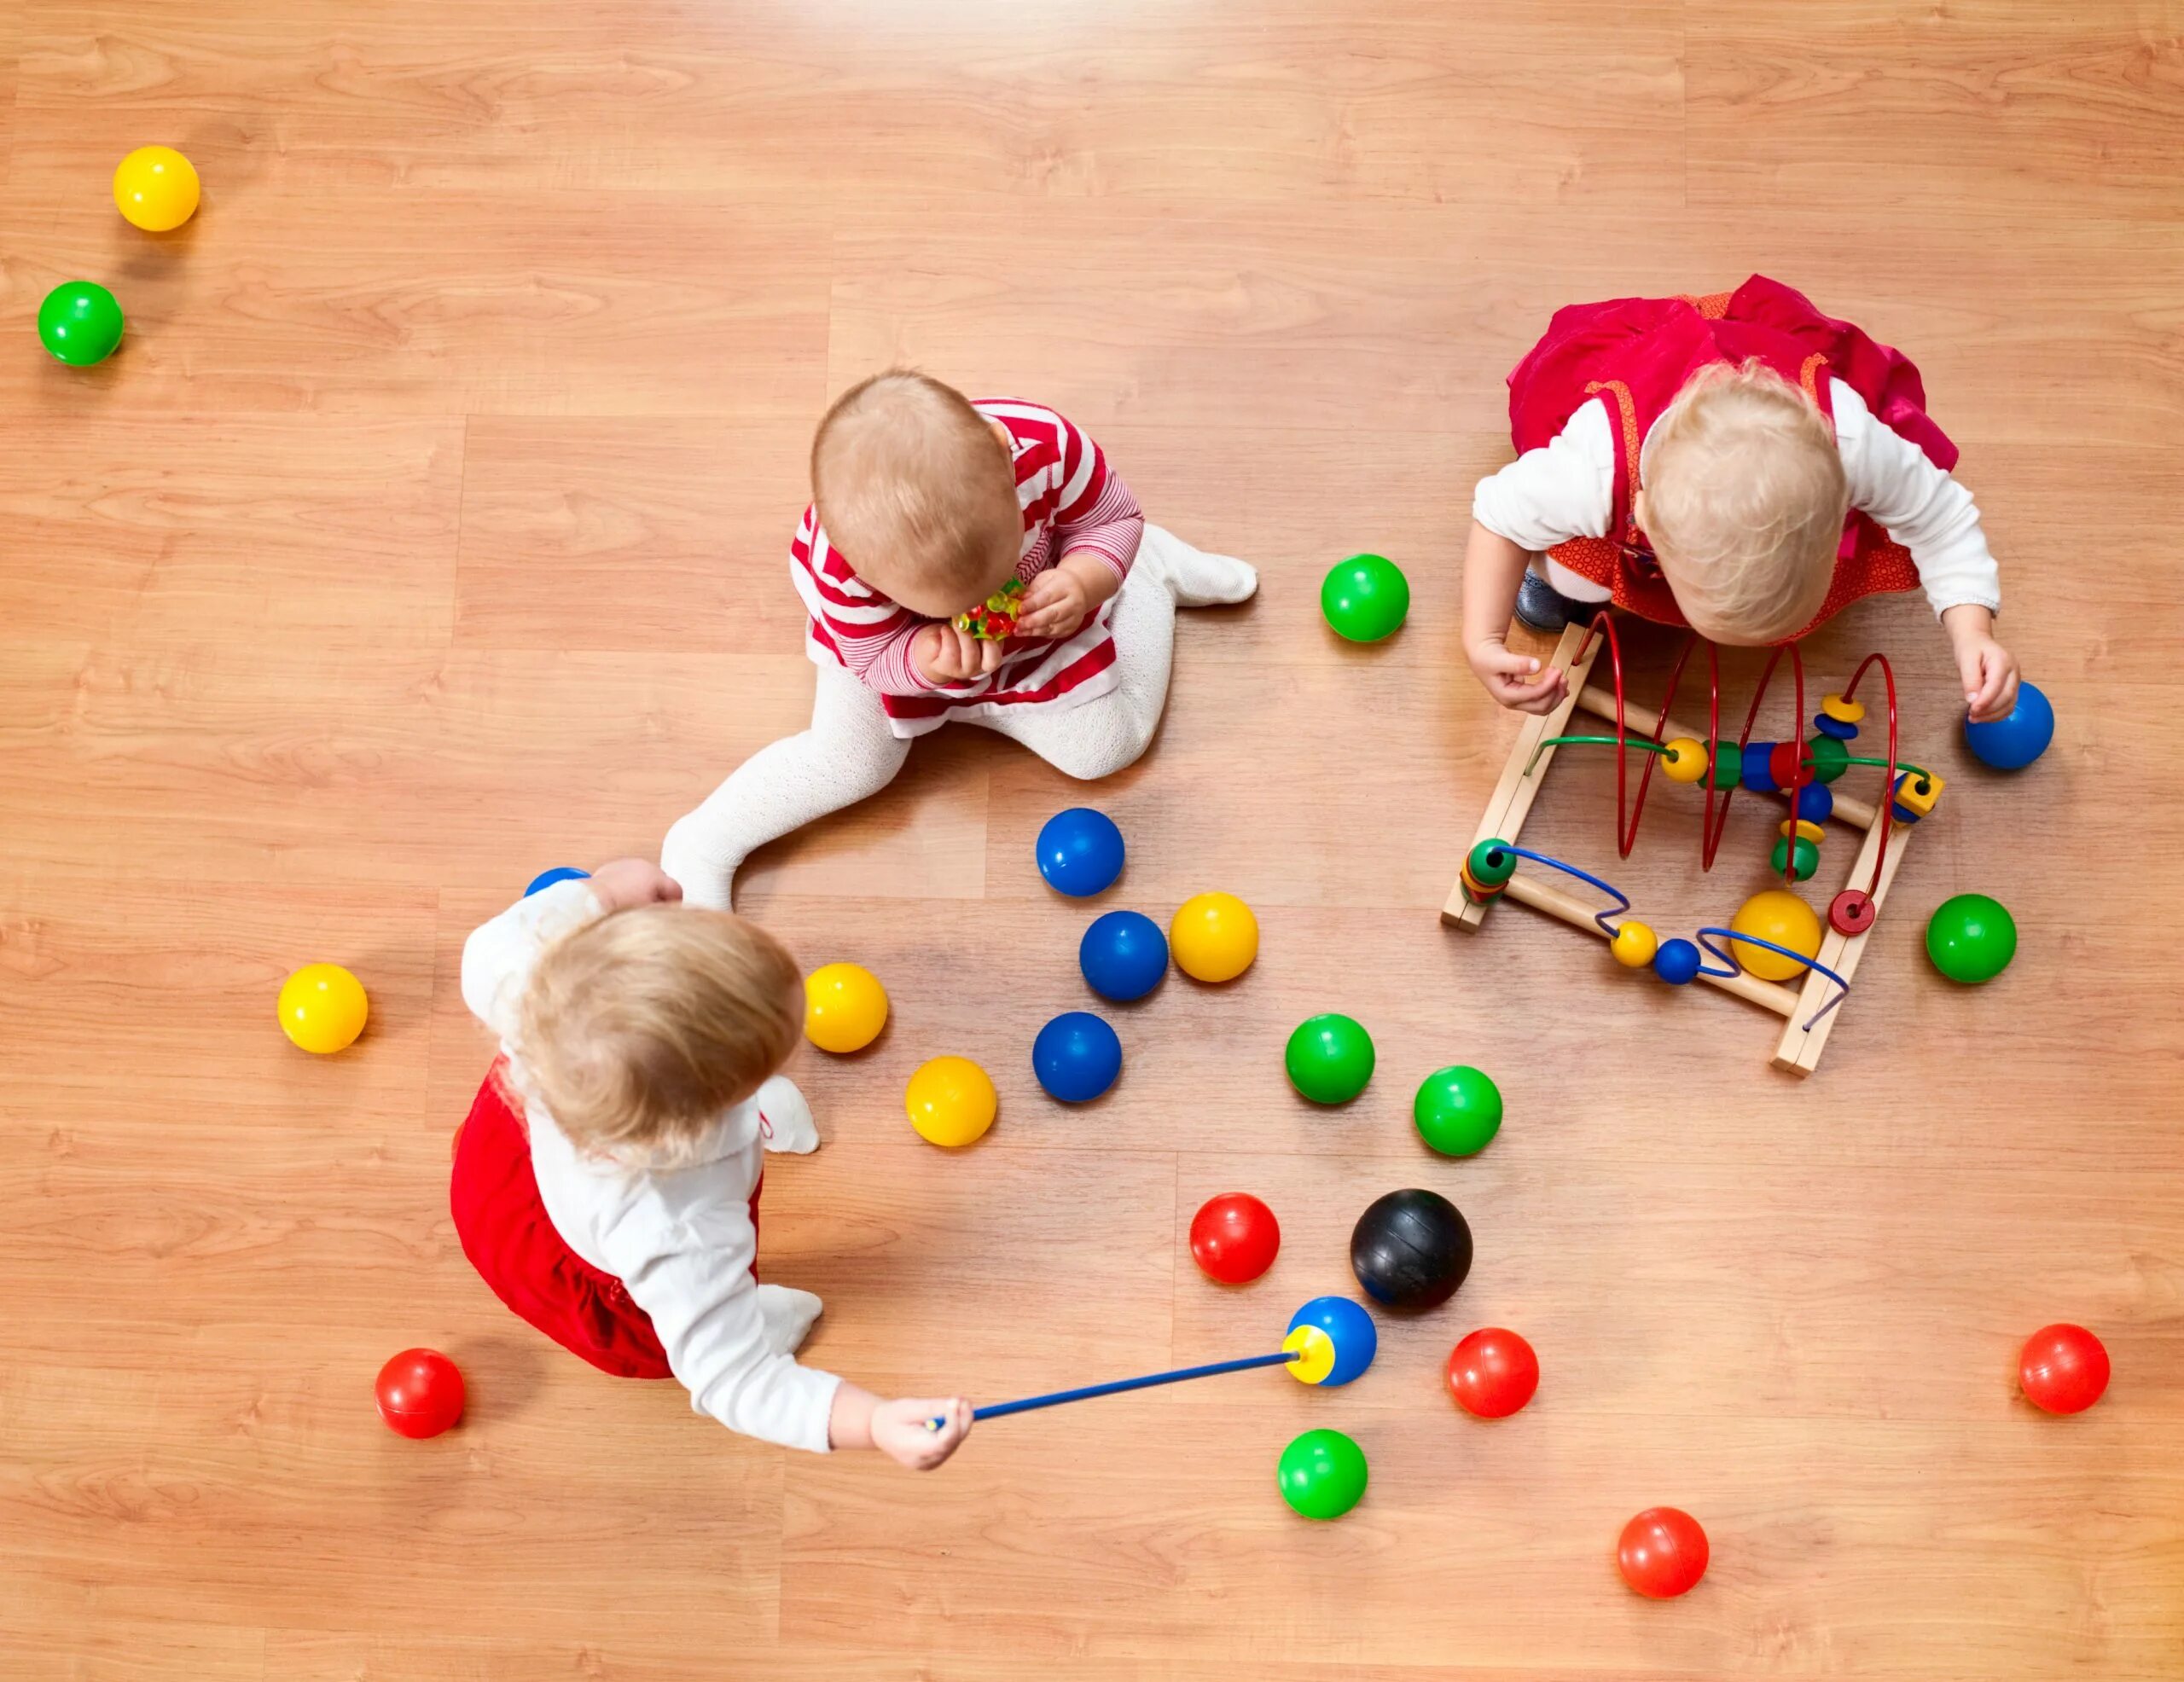 Мальчик играет на полу. Игрушки на полу. Игры для детей на улице. Ребенок играющий в игрушки на полу. Дети играют на полу.